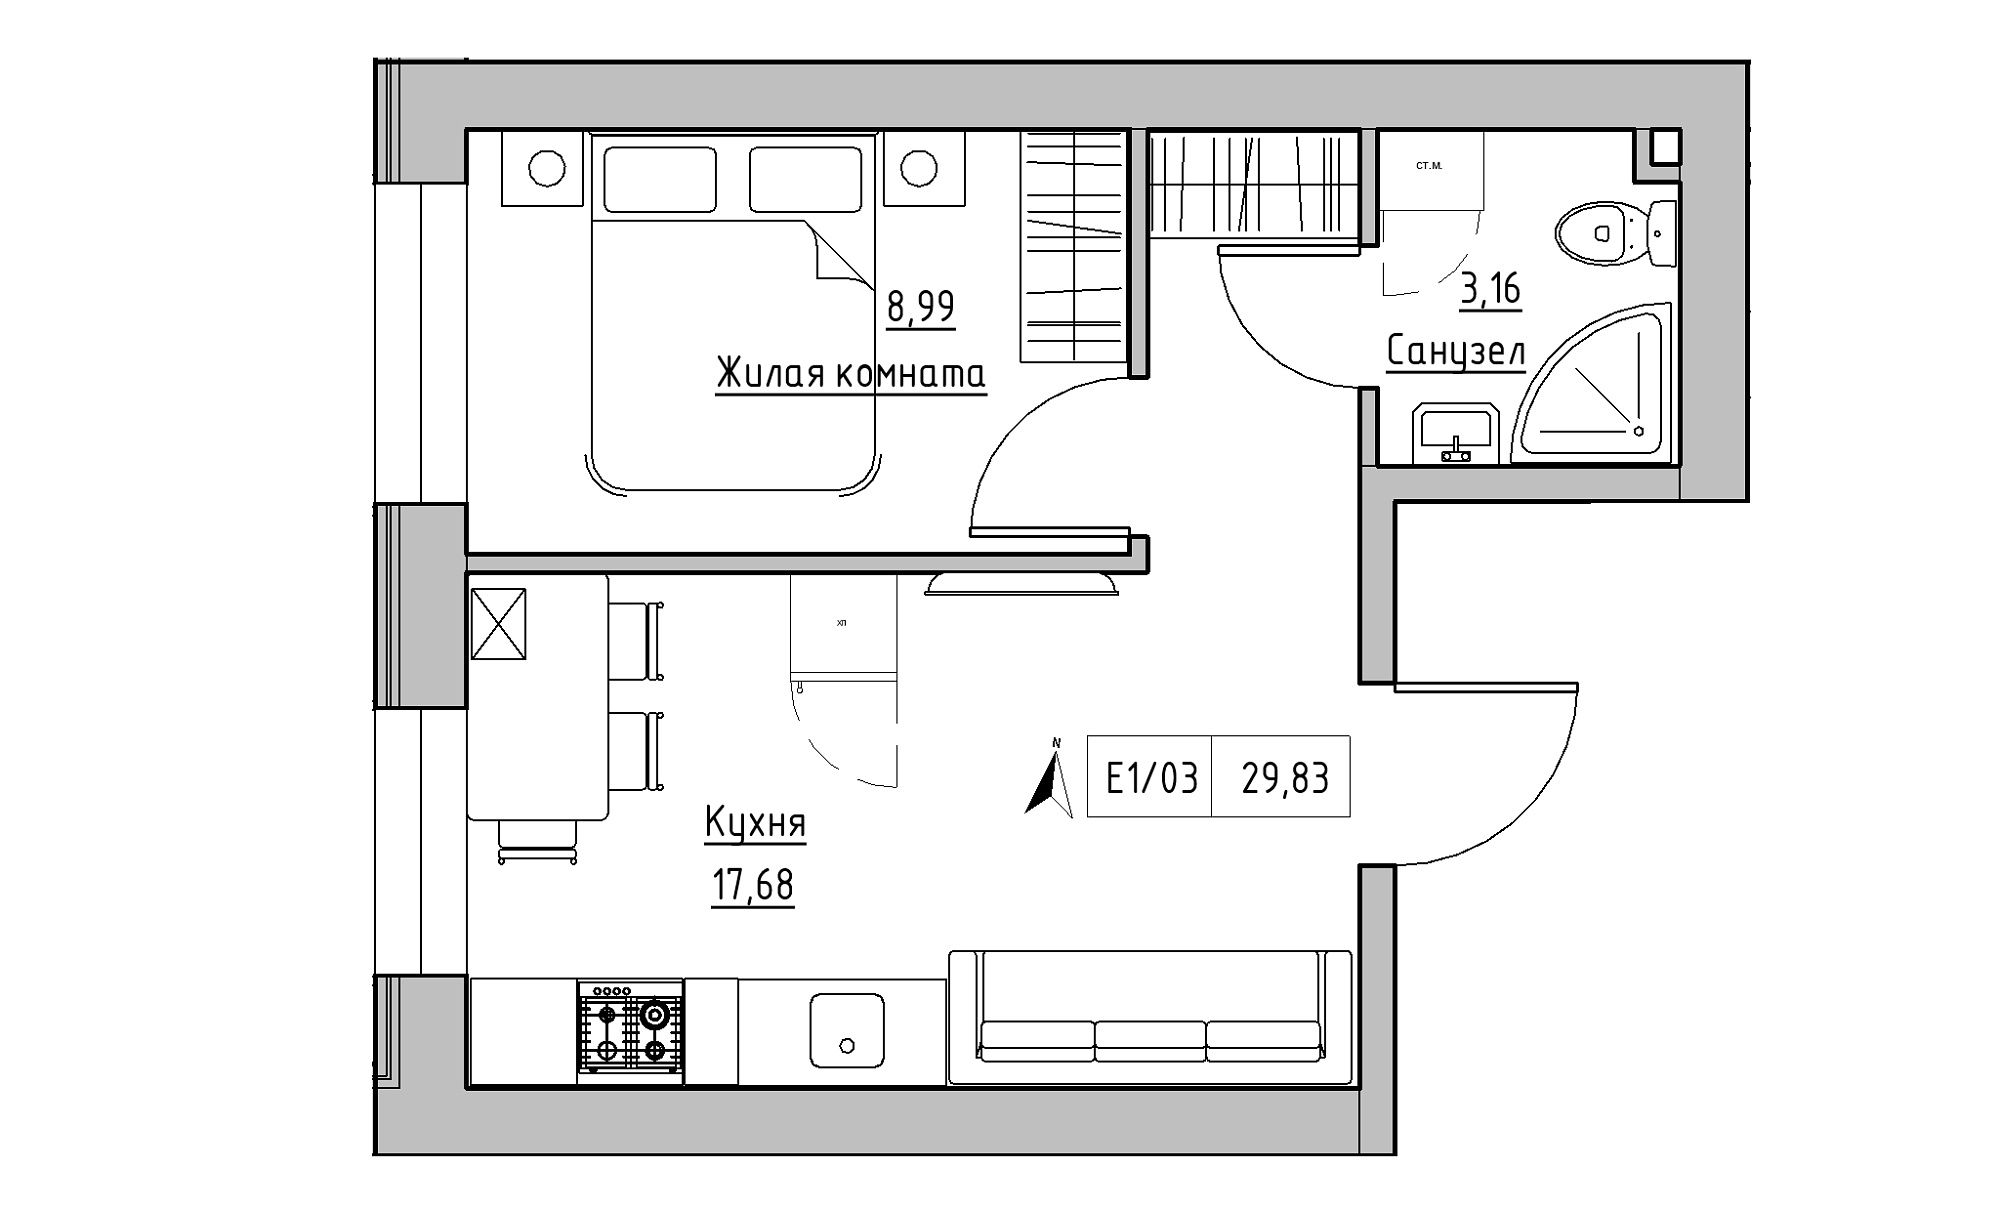 Планировка 1-к квартира площей 29.83м2, KS-015-01/0003.